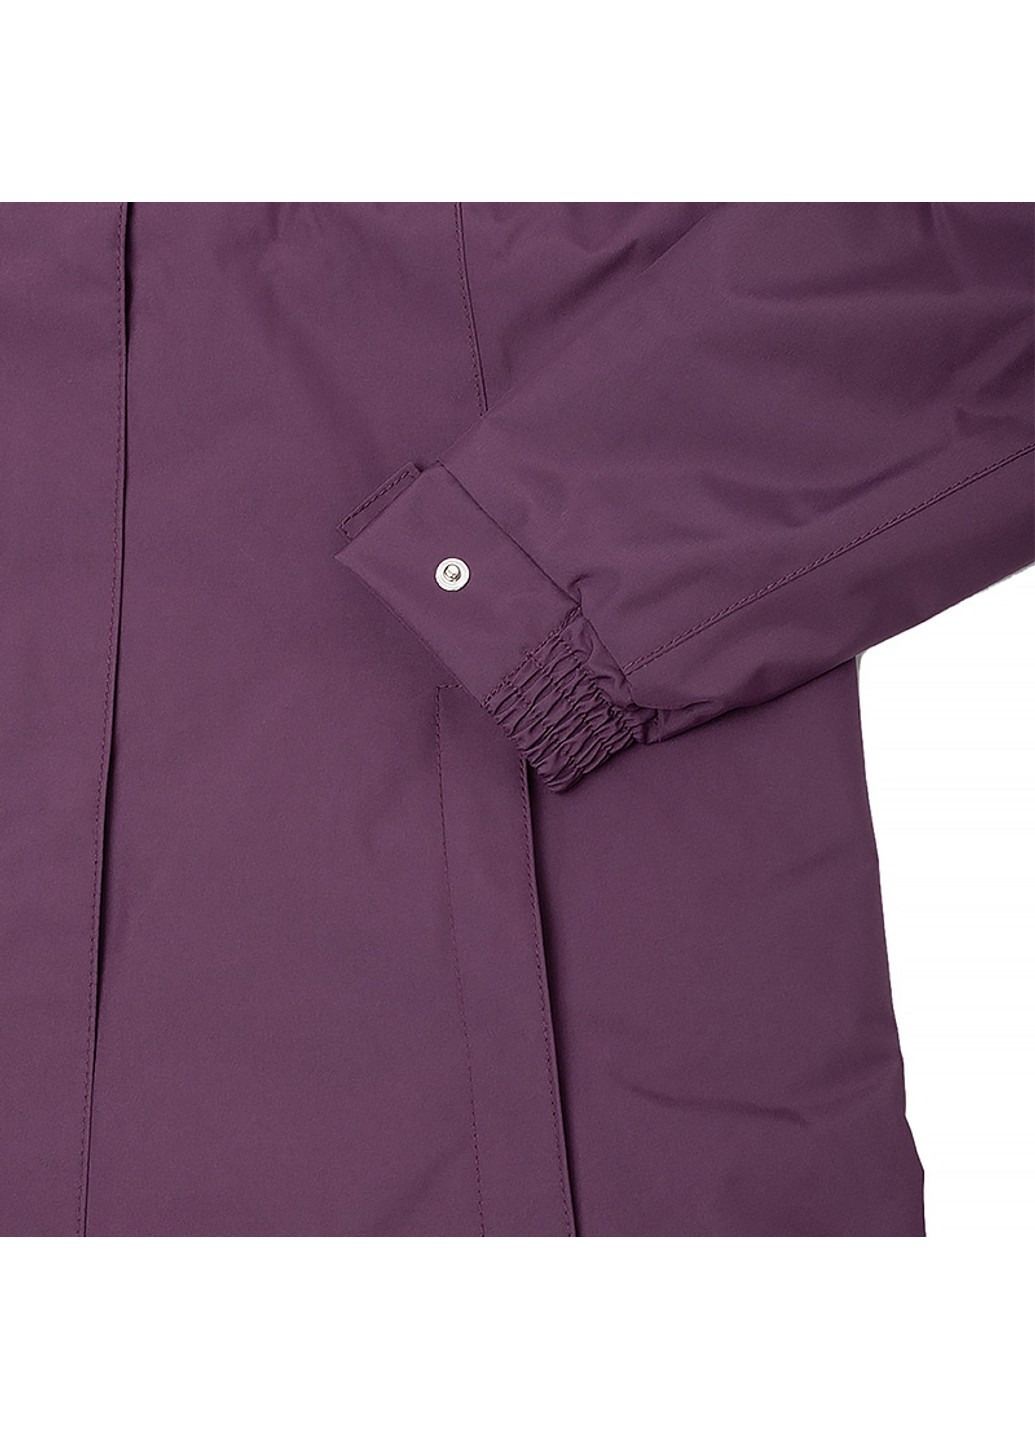 Фиолетовая демисезонная куртка aden insulated coat Helly Hansen